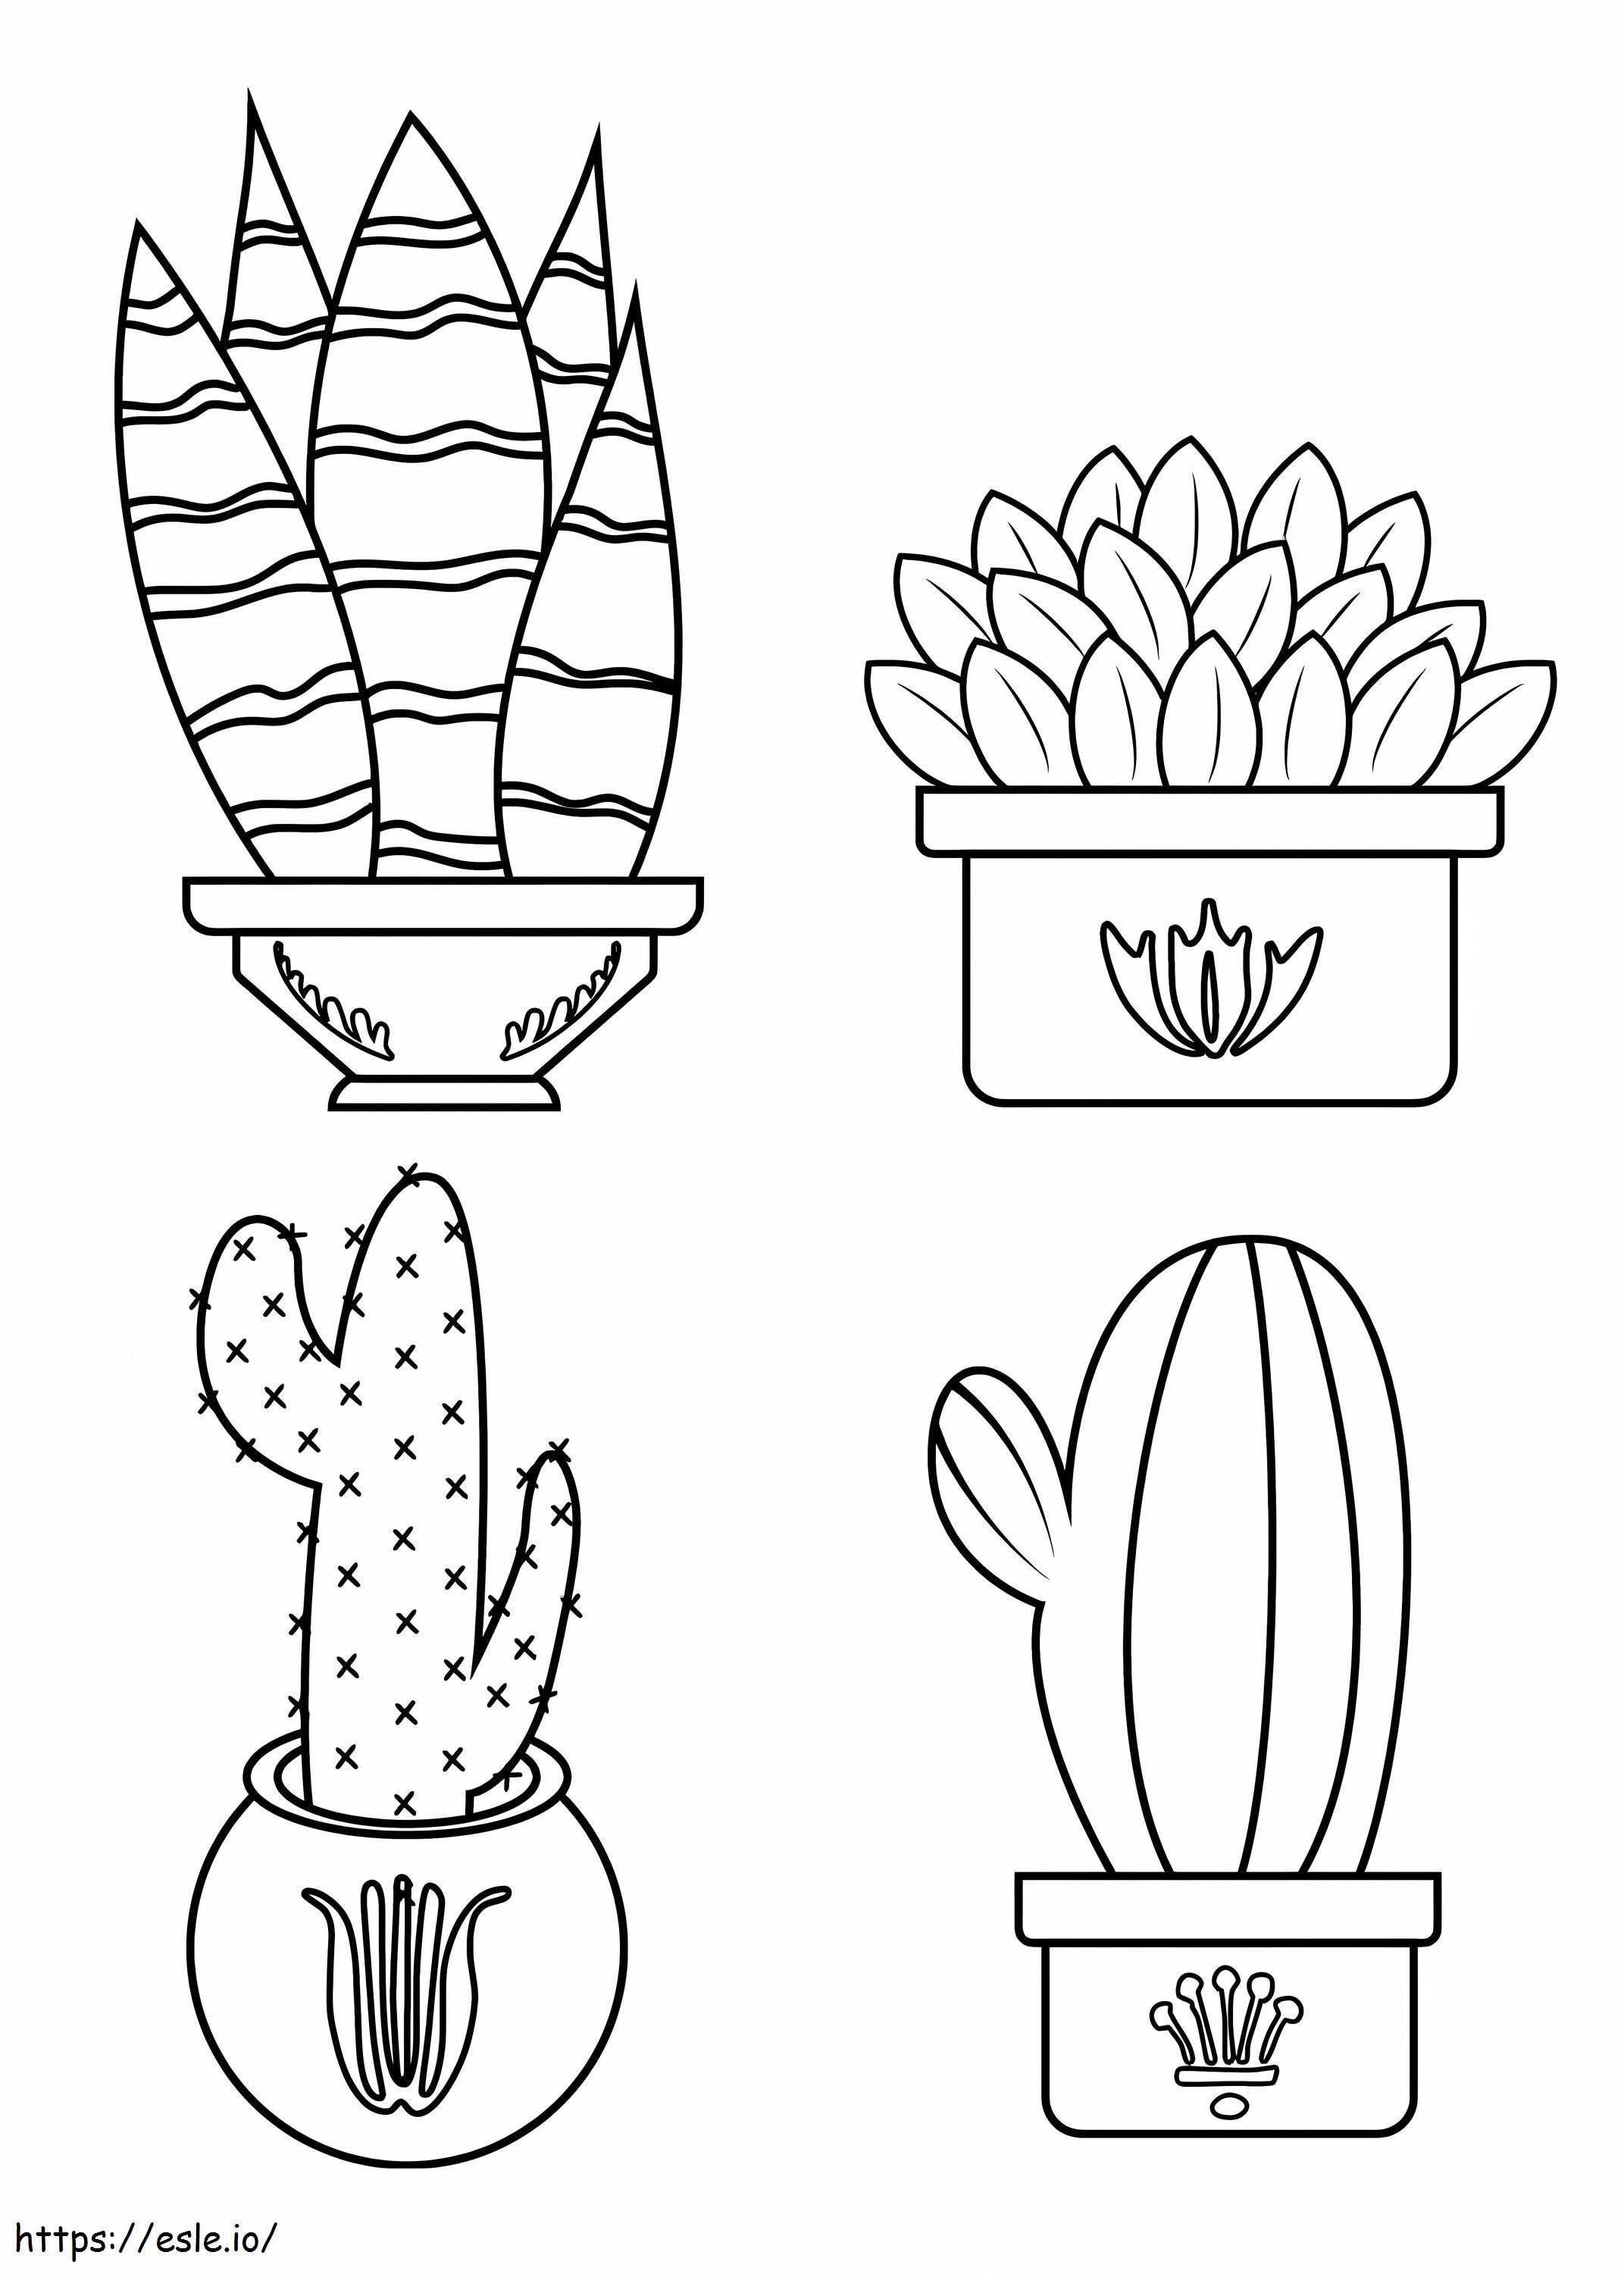 Cuatro cactus en maceta para colorear